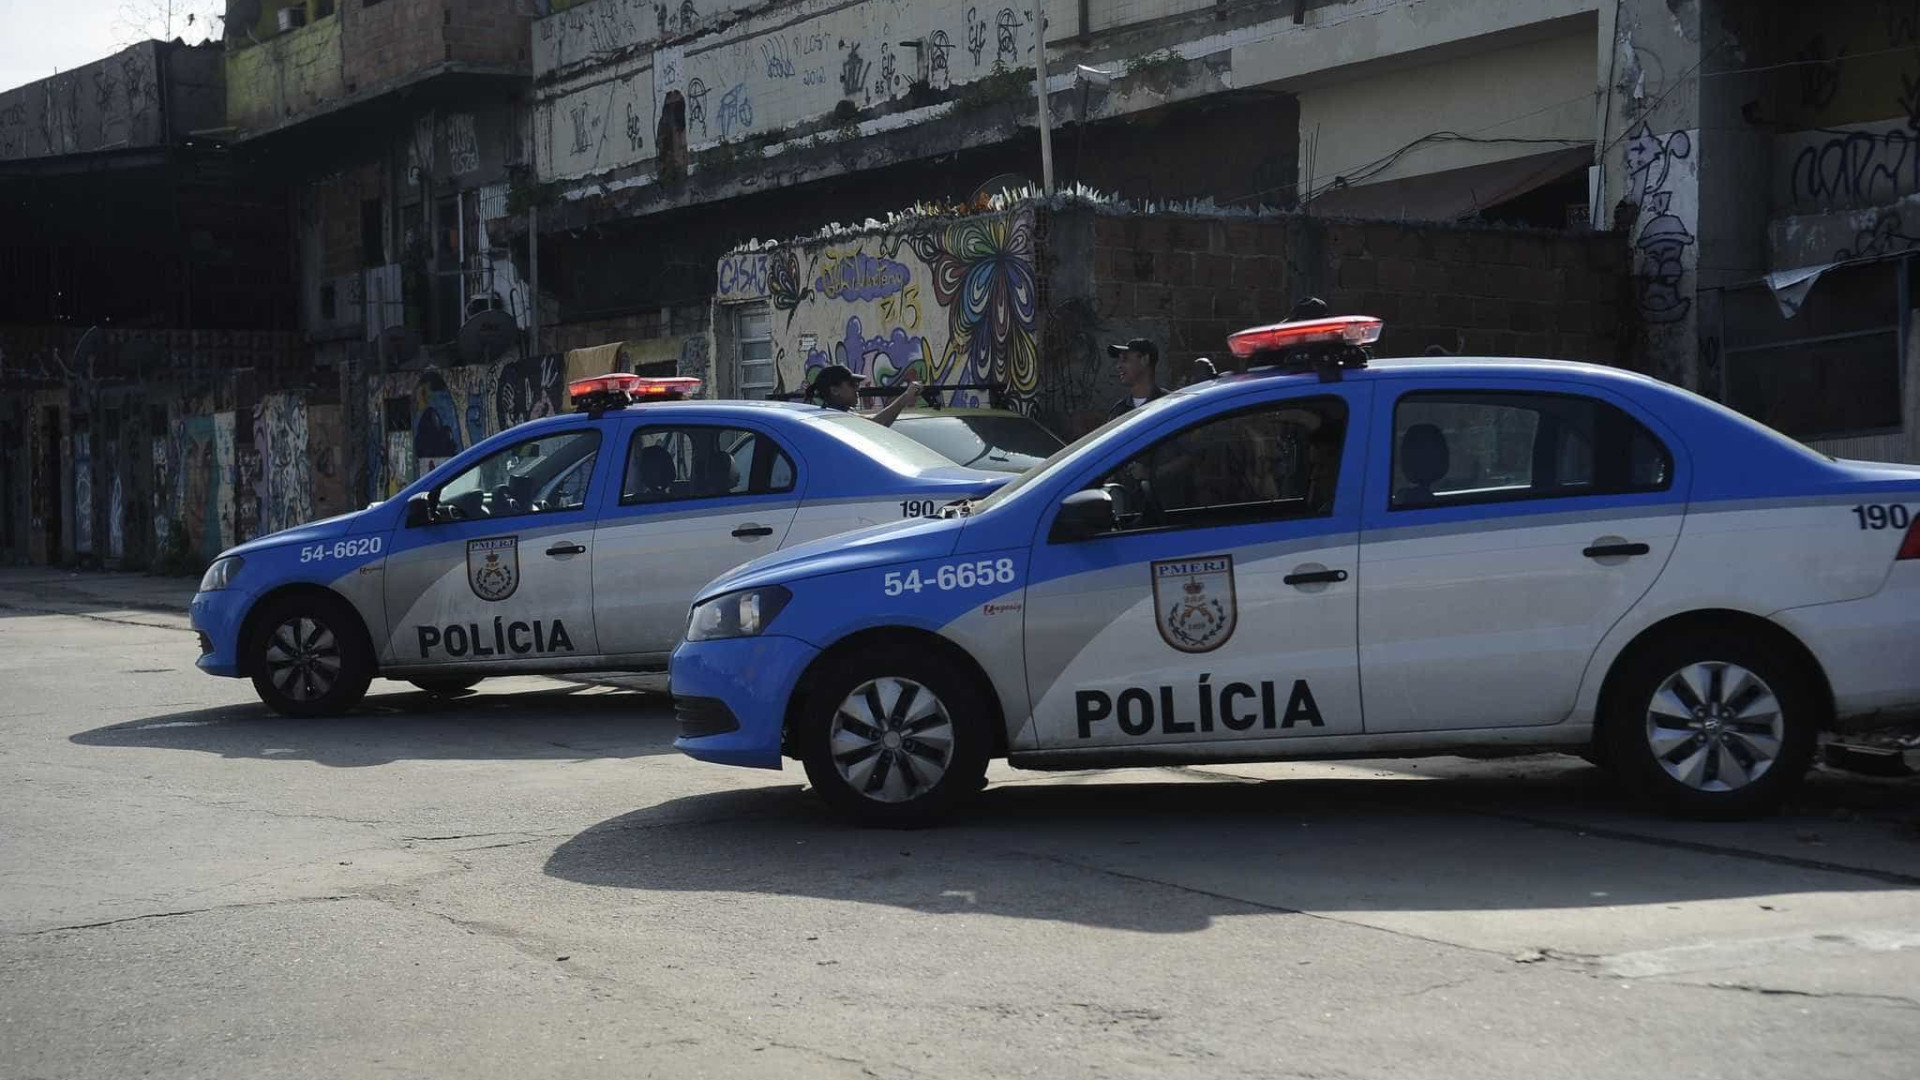 PM do Rio investiga participação
de oficiais em protestos 